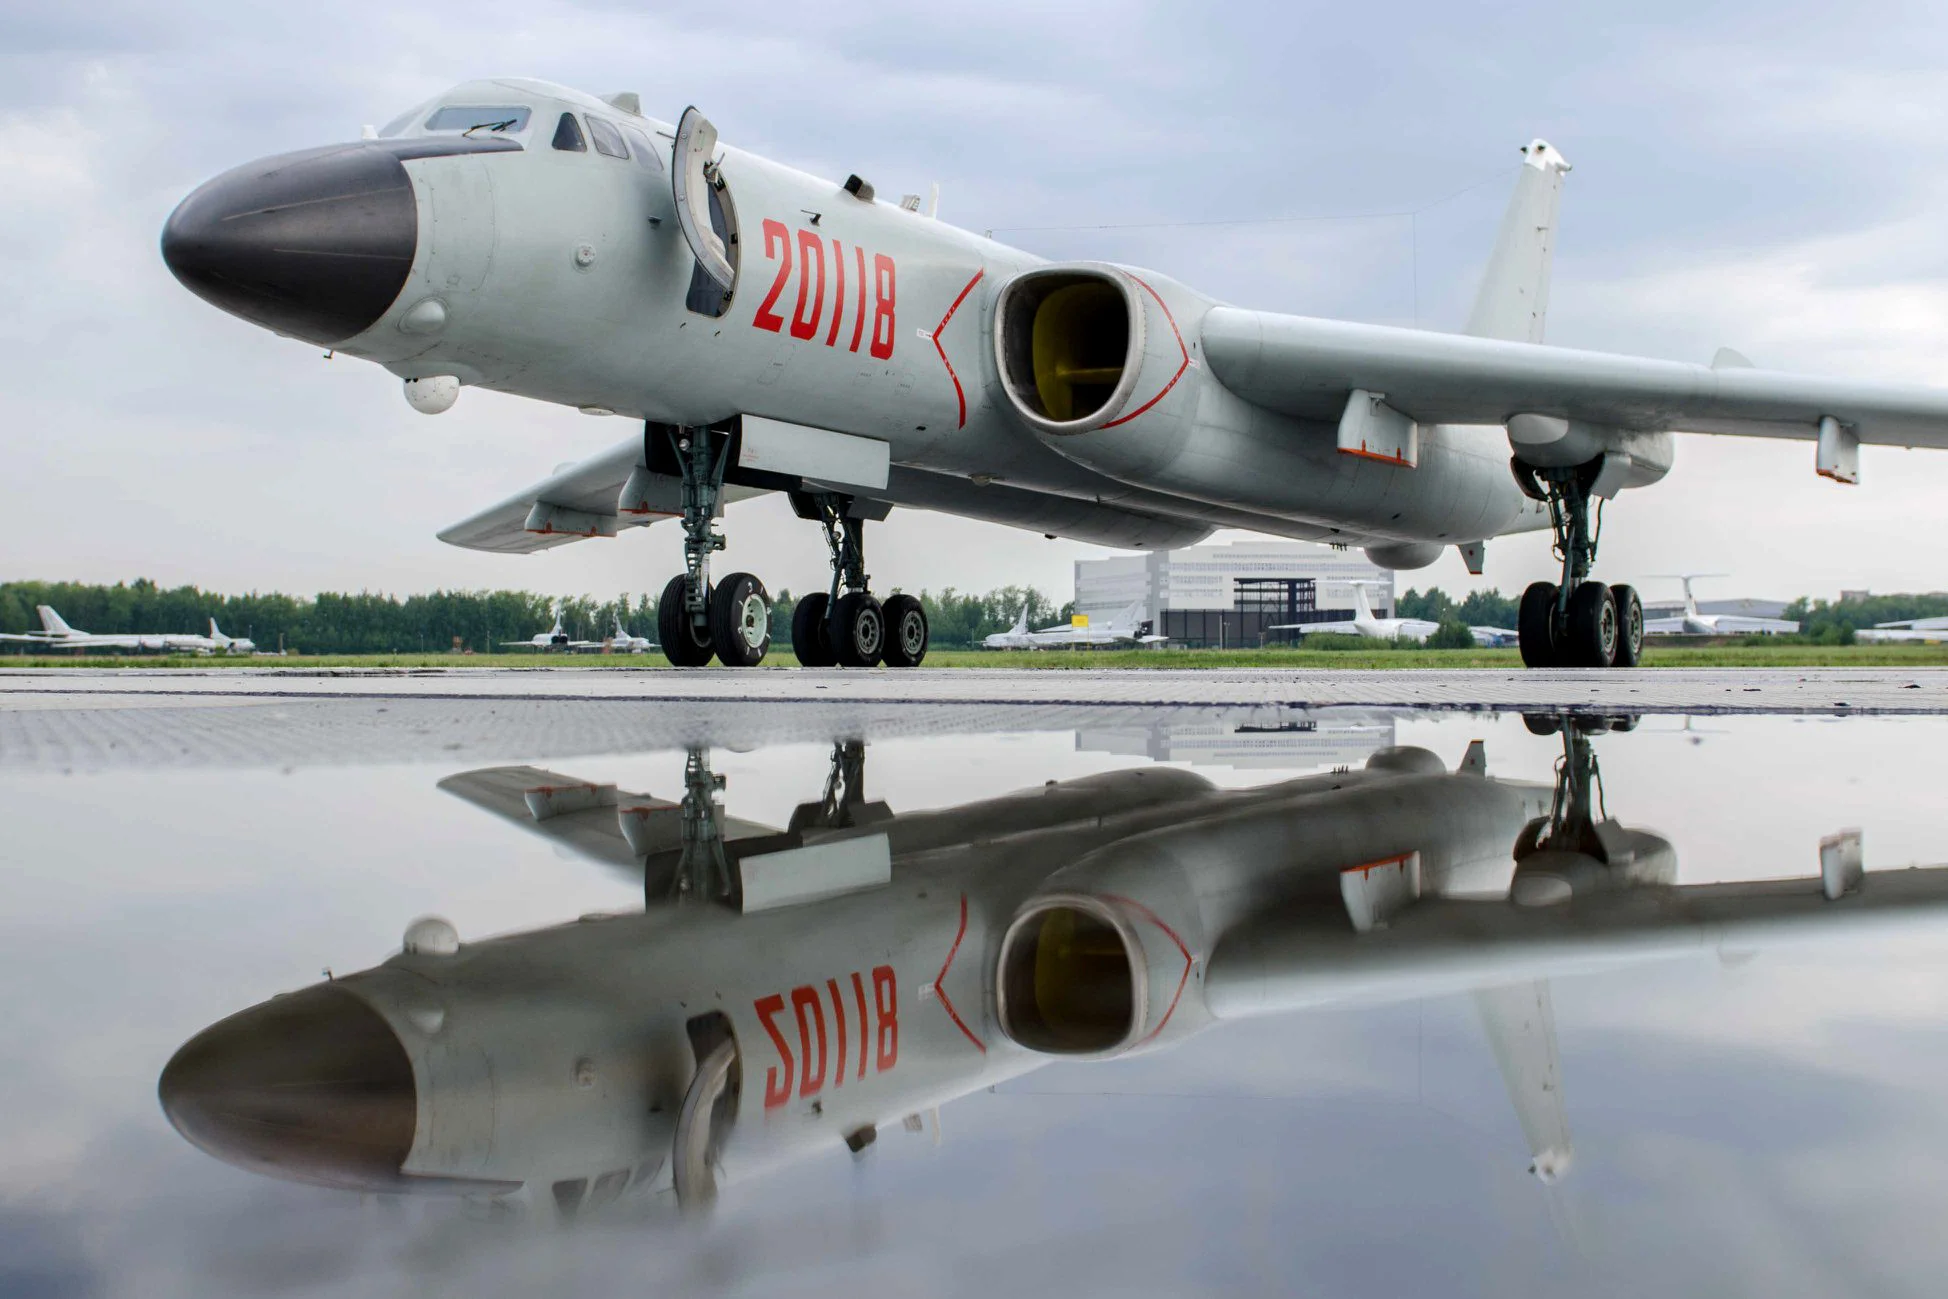 Chińskie i rosyjskie bombowce atomowe po raz pierwszy w historii zamieniają się lotniskami - H-6K Xian ląduje w Rosji, a Chiny otrzymują Tu-95MS